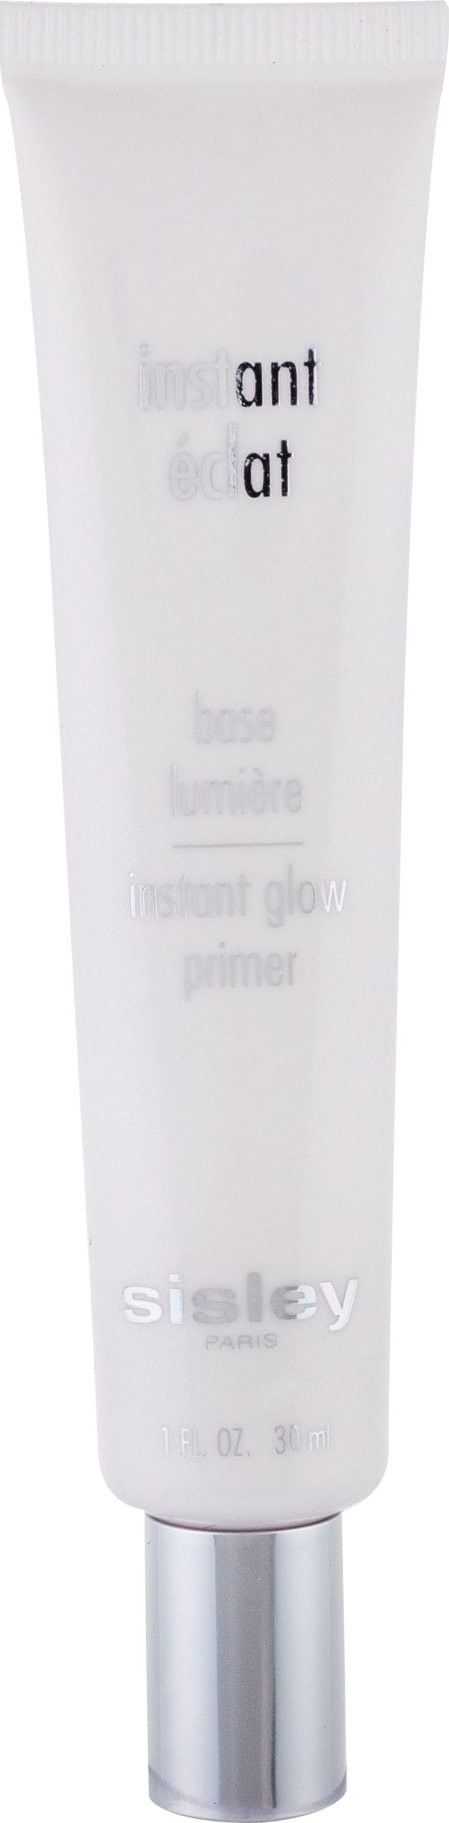 Sisley Instant Eclat GLOW PRIMER 30ML este un produs de machiaj care conferă o strălucire instantanee tenului. Acest primer este potrivit pentru toate tipurile de piele și are o textură ușoară și fluidă. Formula sa conține particule luminoase care lu